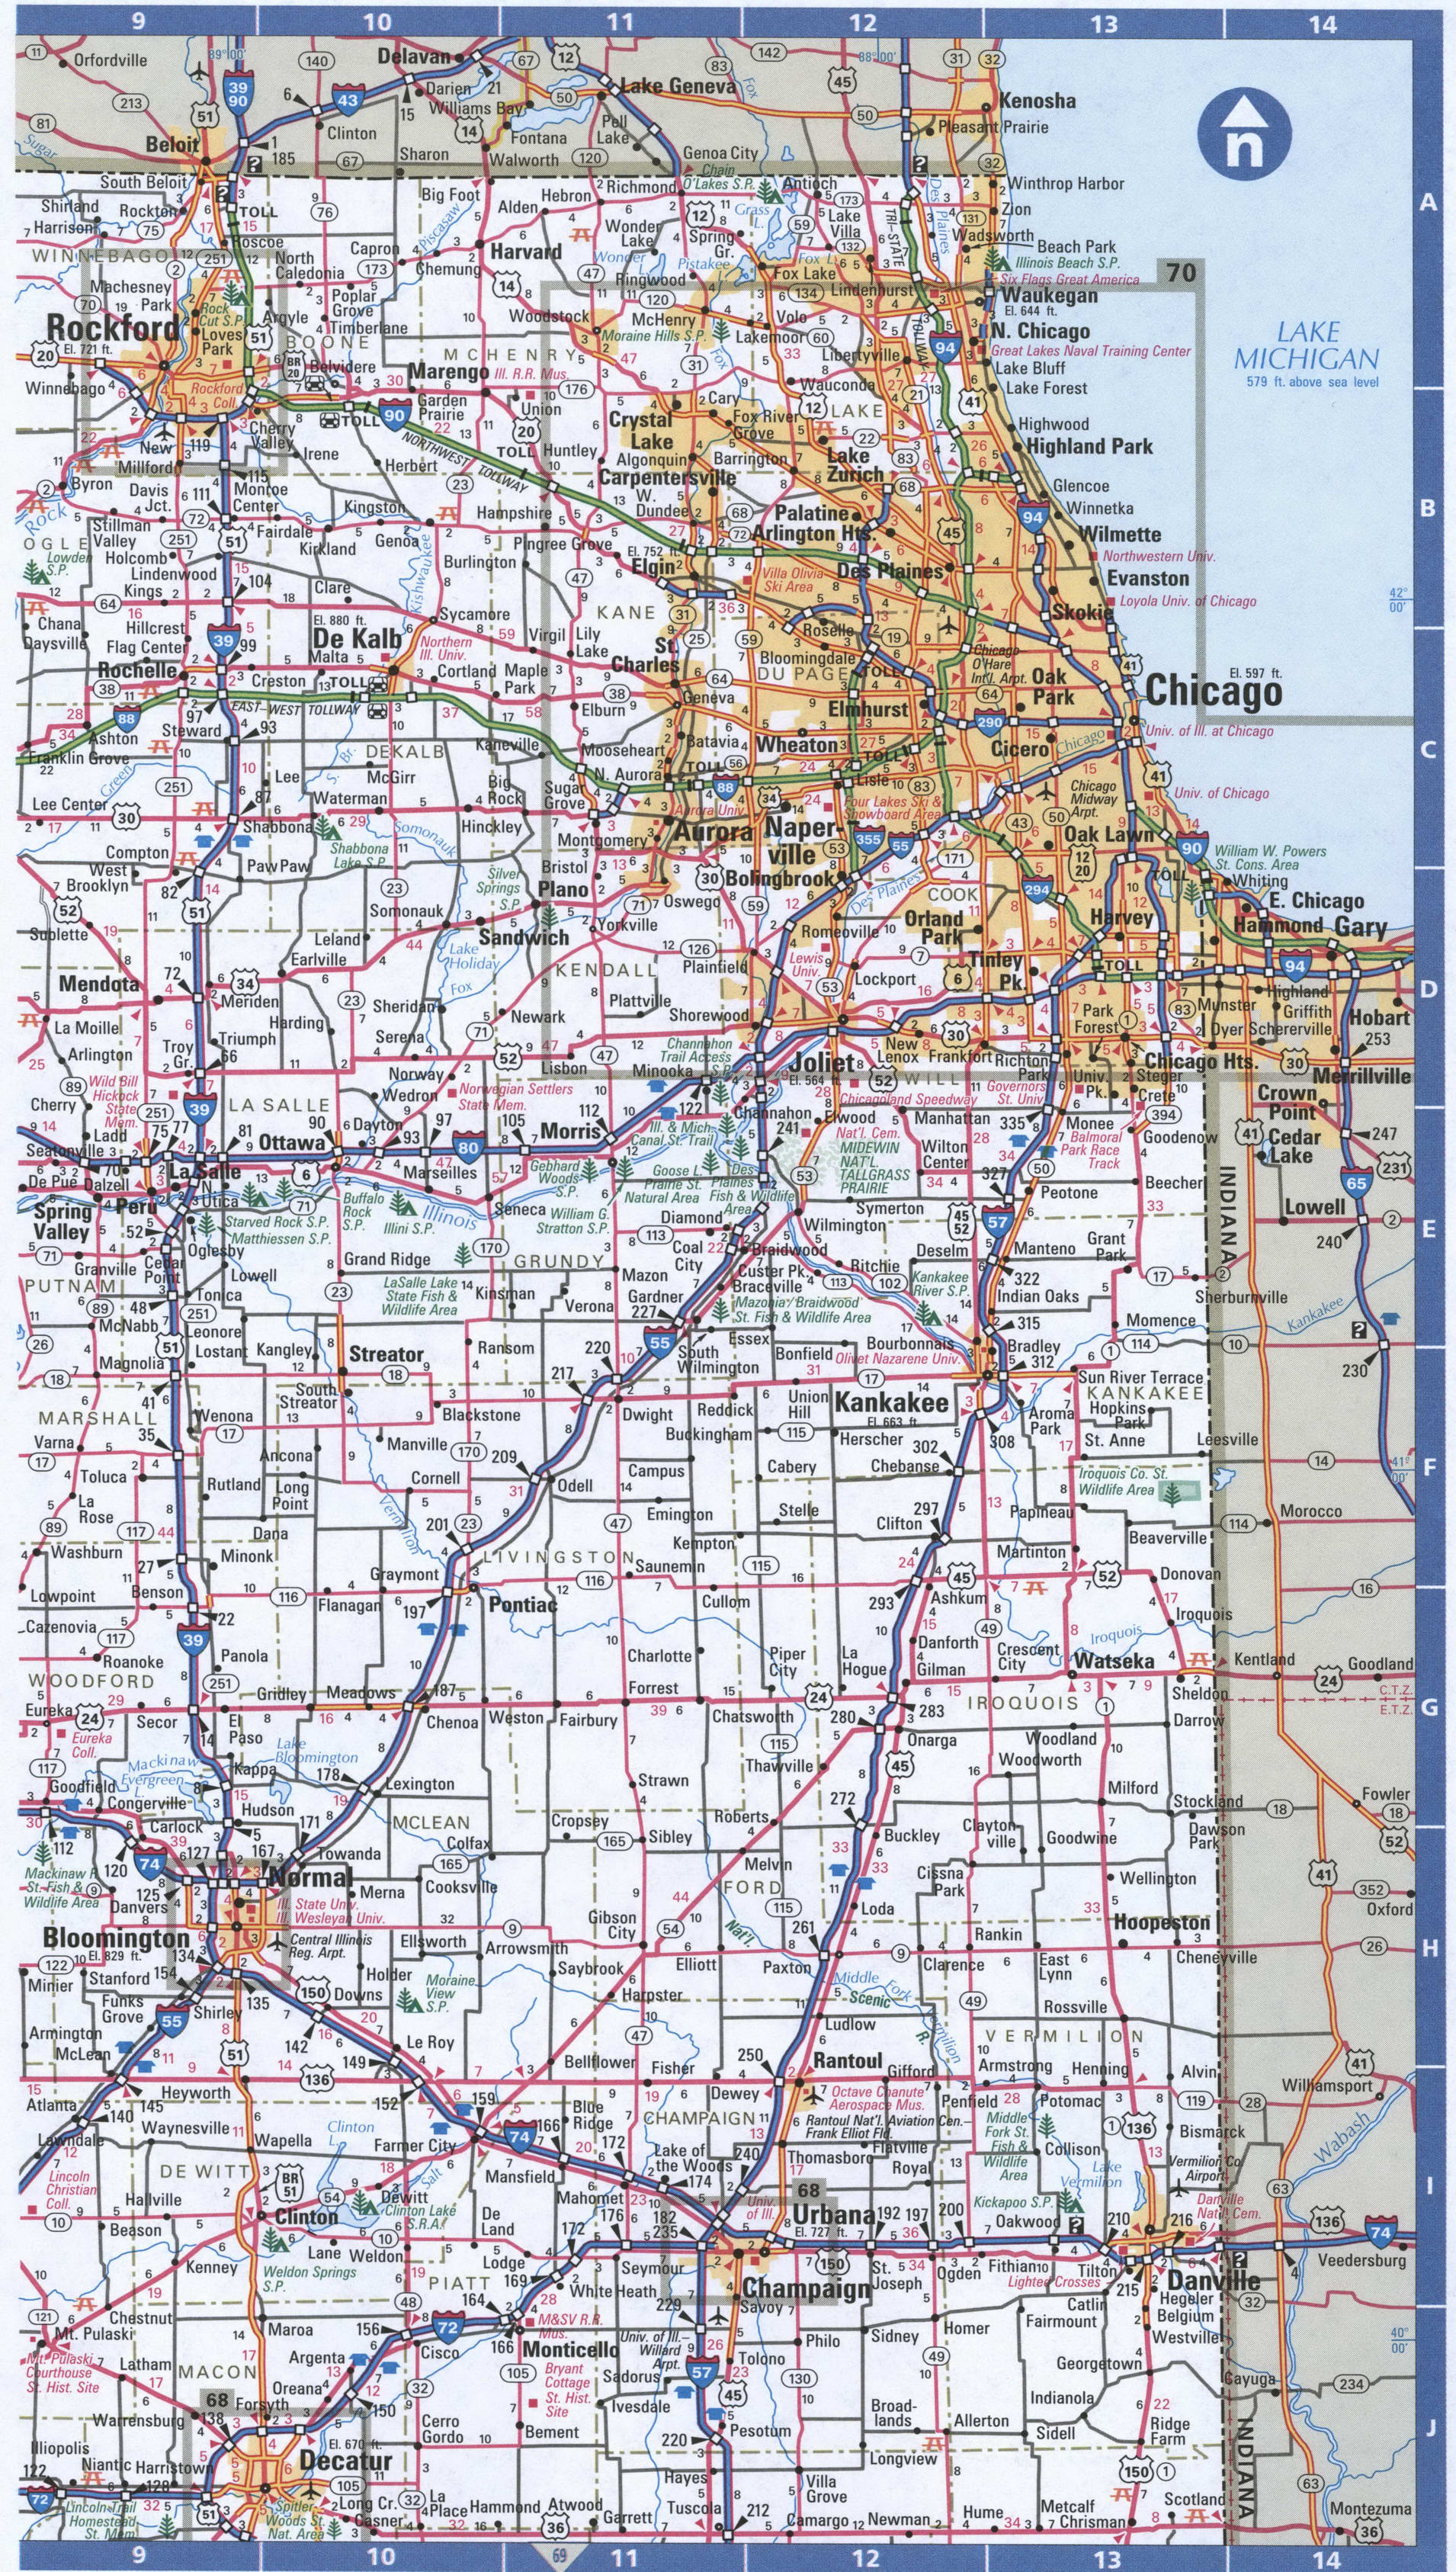 NorthEast Illinois map